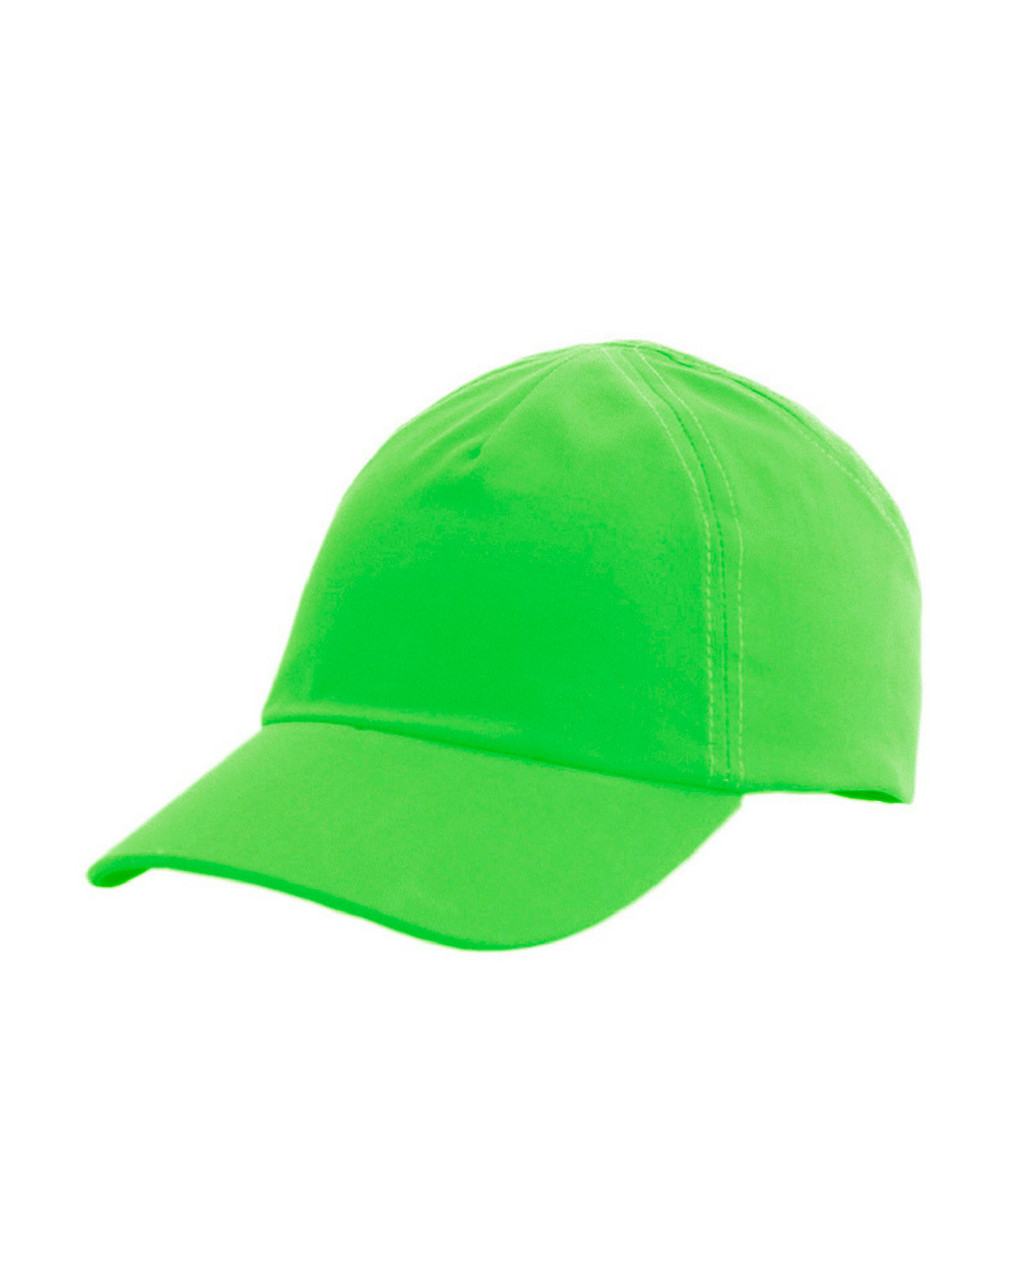 Каскетка РОСОМЗ RZ FavoriT CAP зелёная, 95519